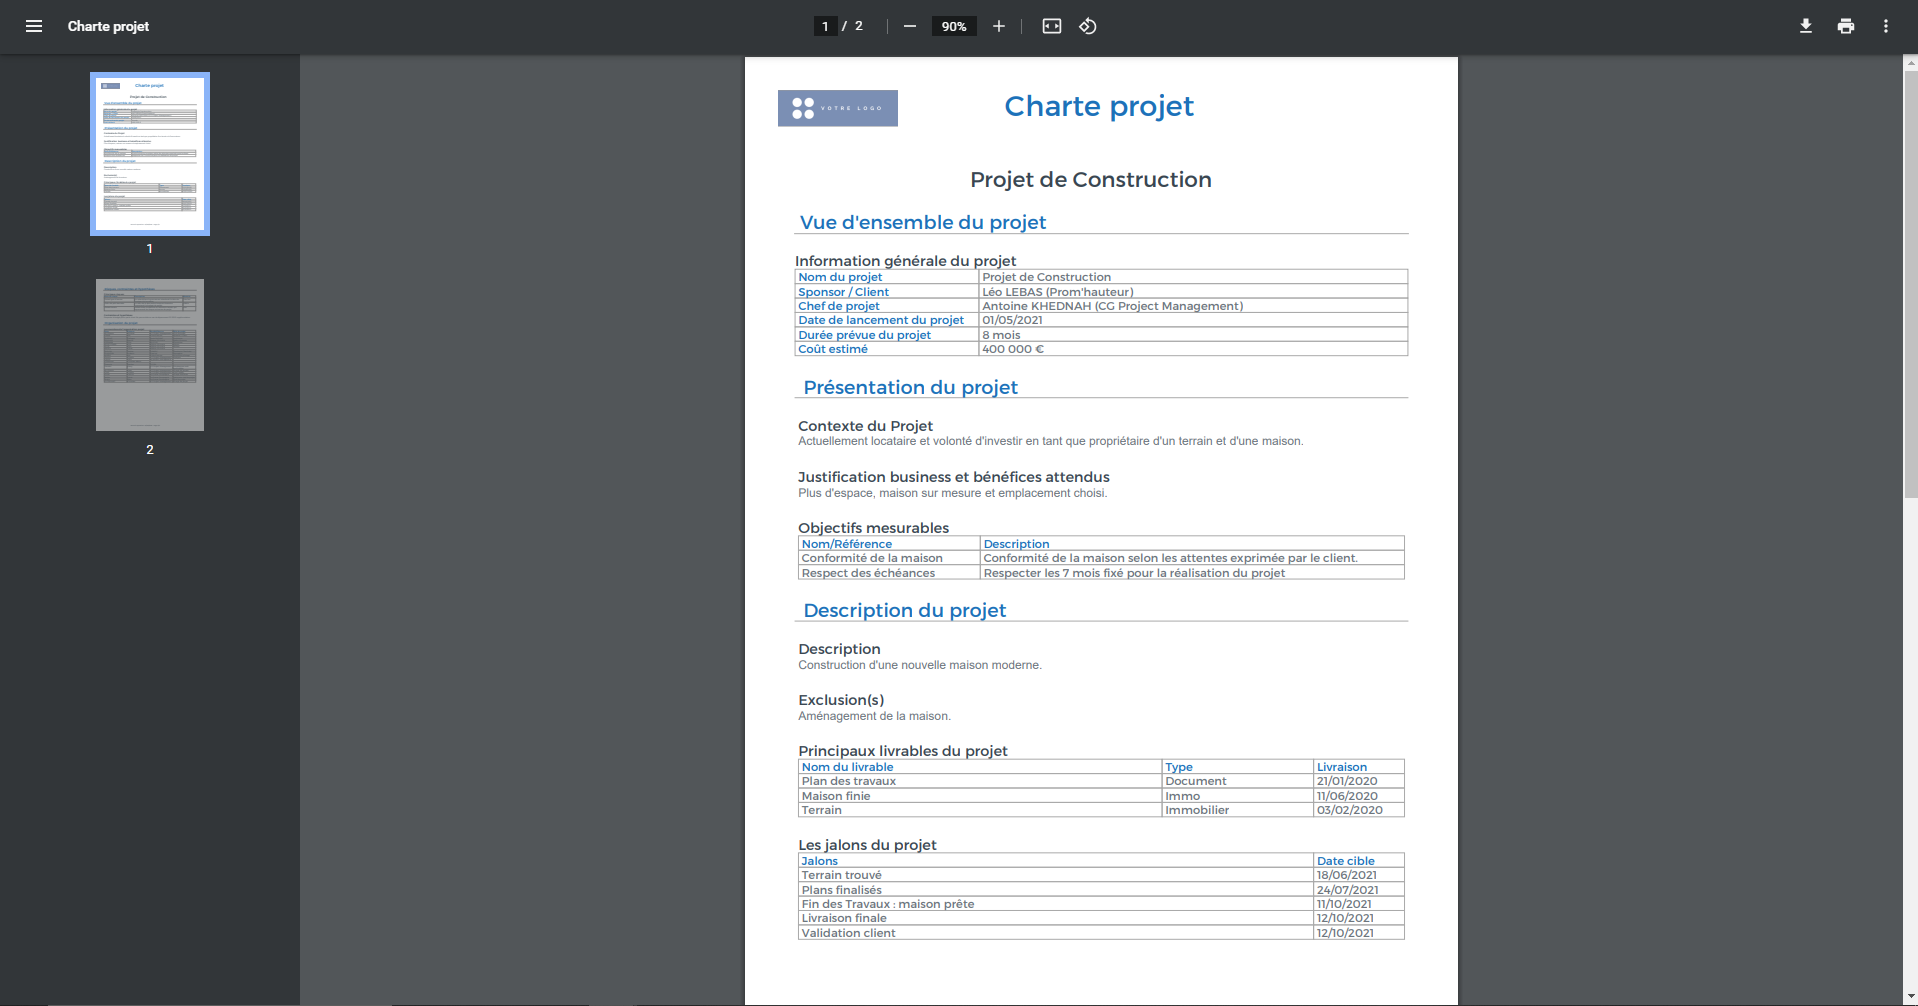 Gouti - La Charte projet, document de cadrage, permet de définir le périmètre d'un projet. Elle est exportable en PDF.